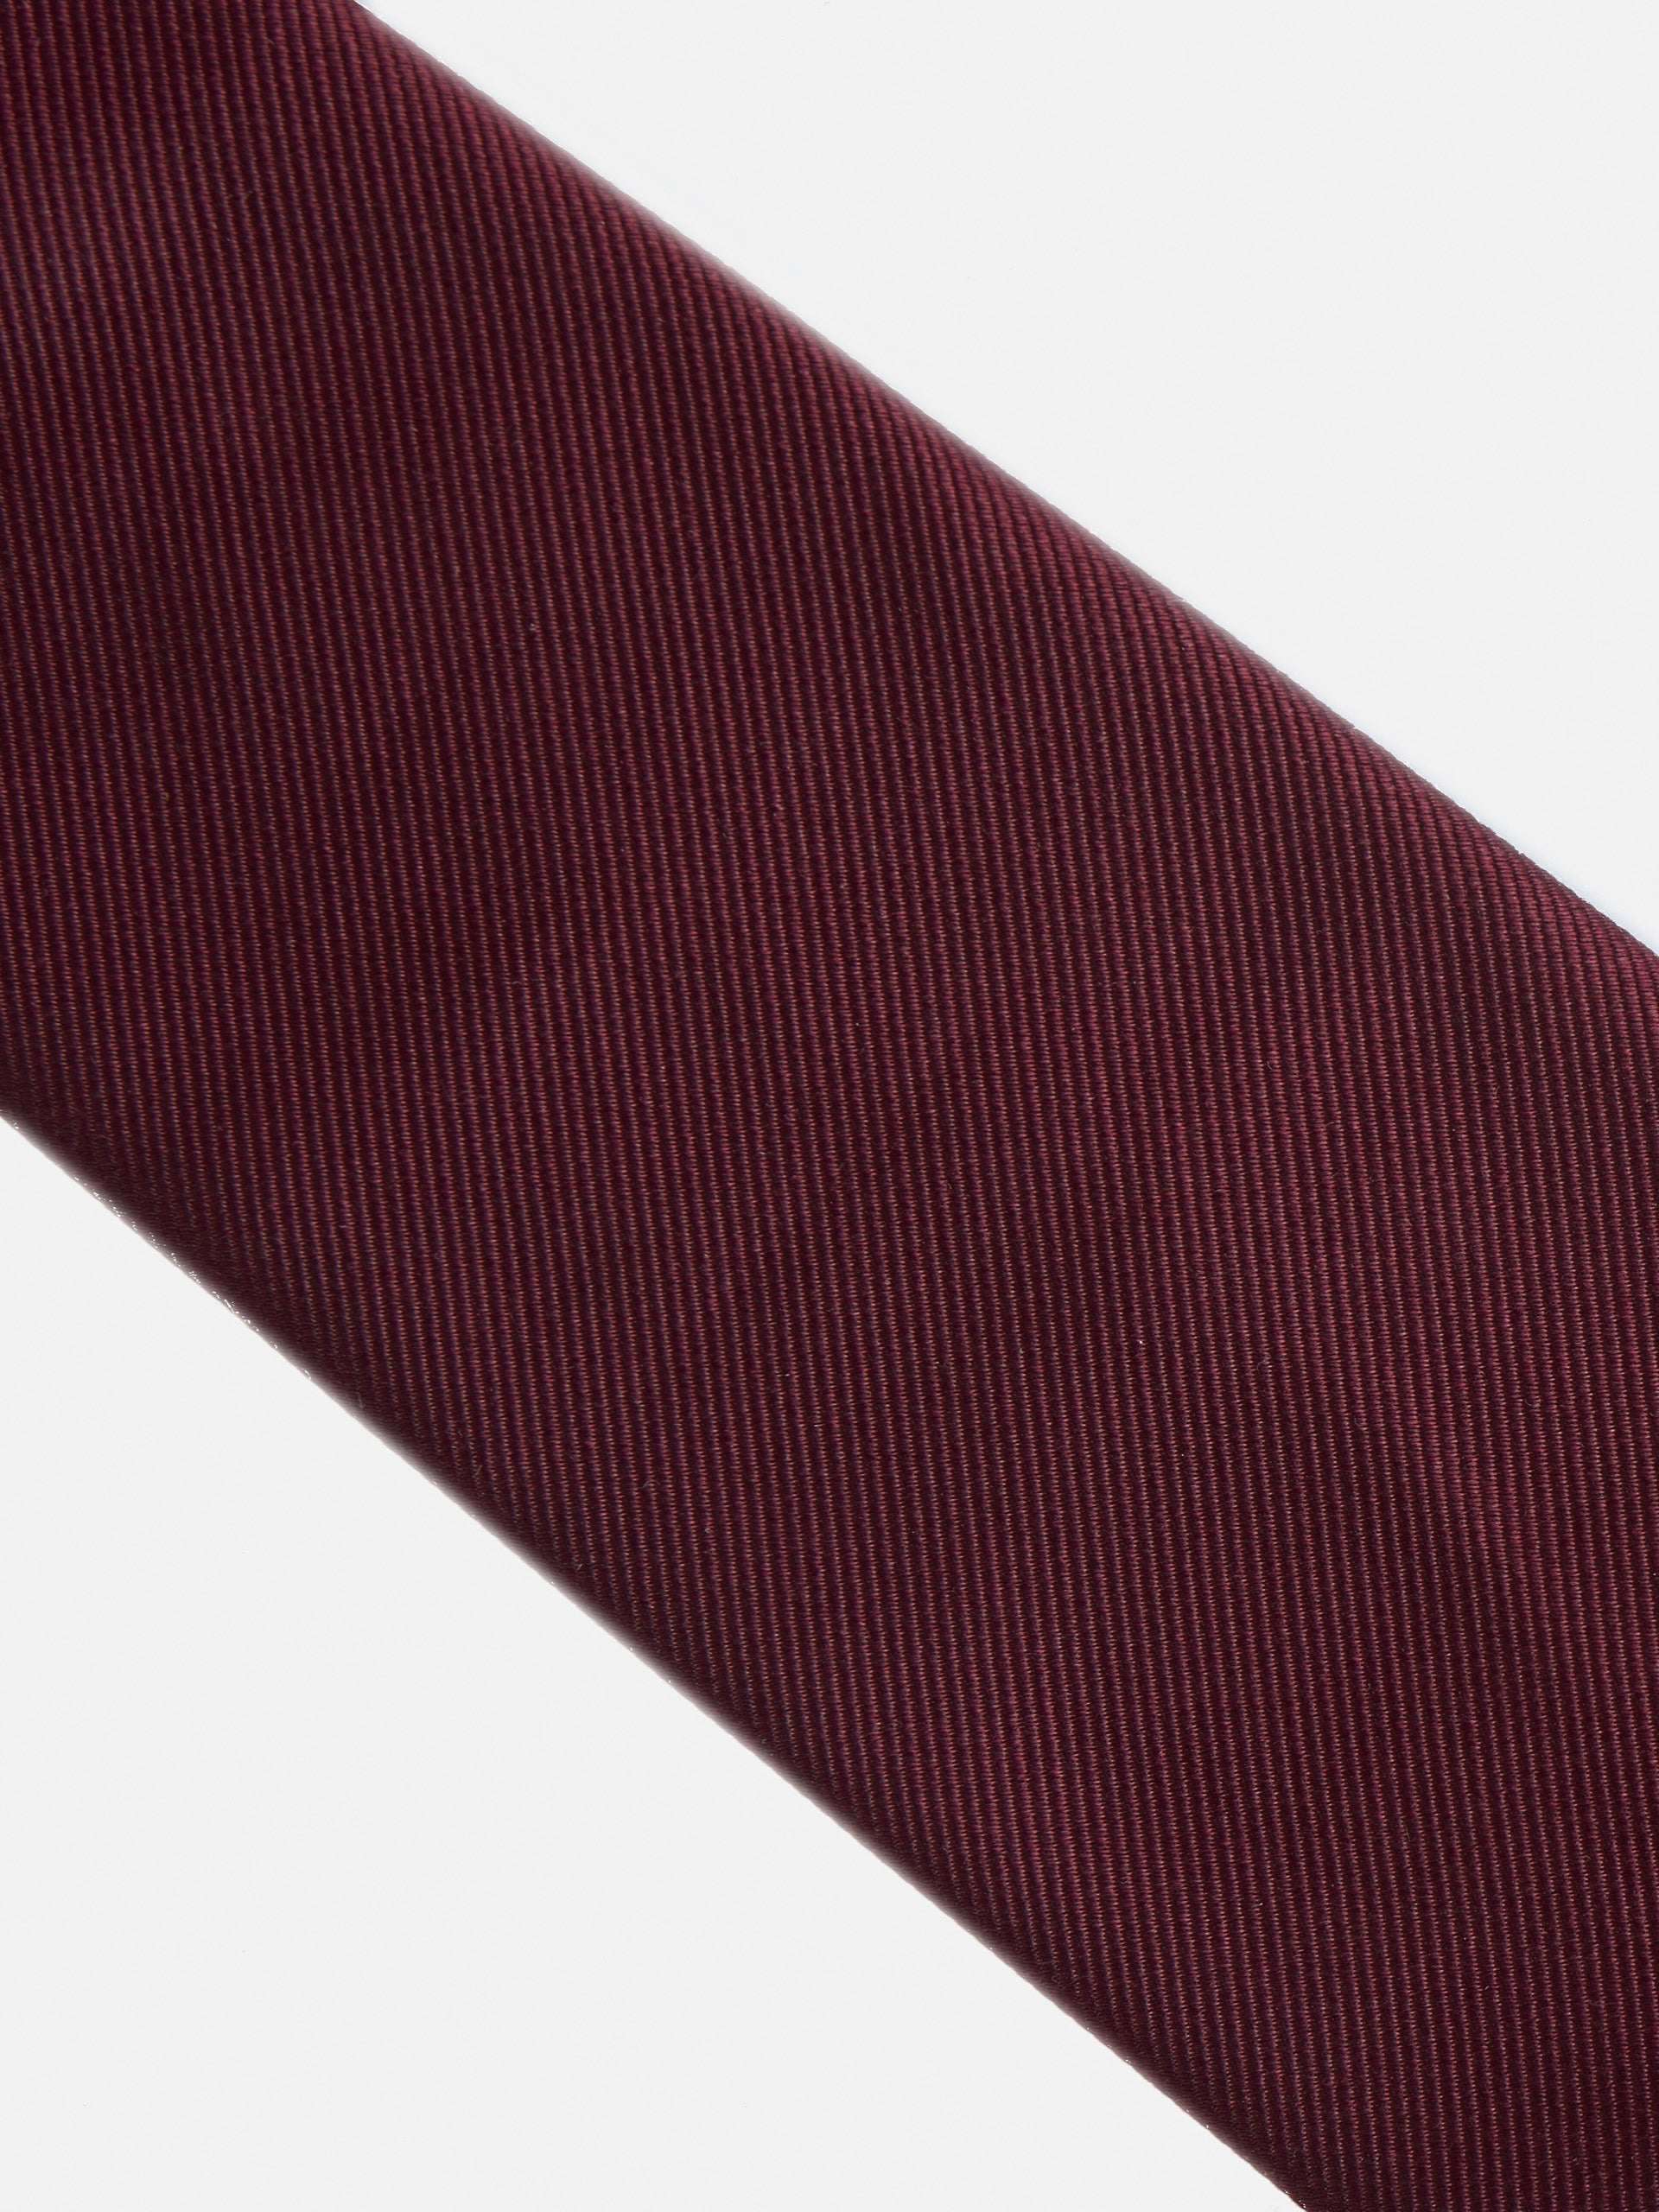 Cravate silbon lisse bordeaux